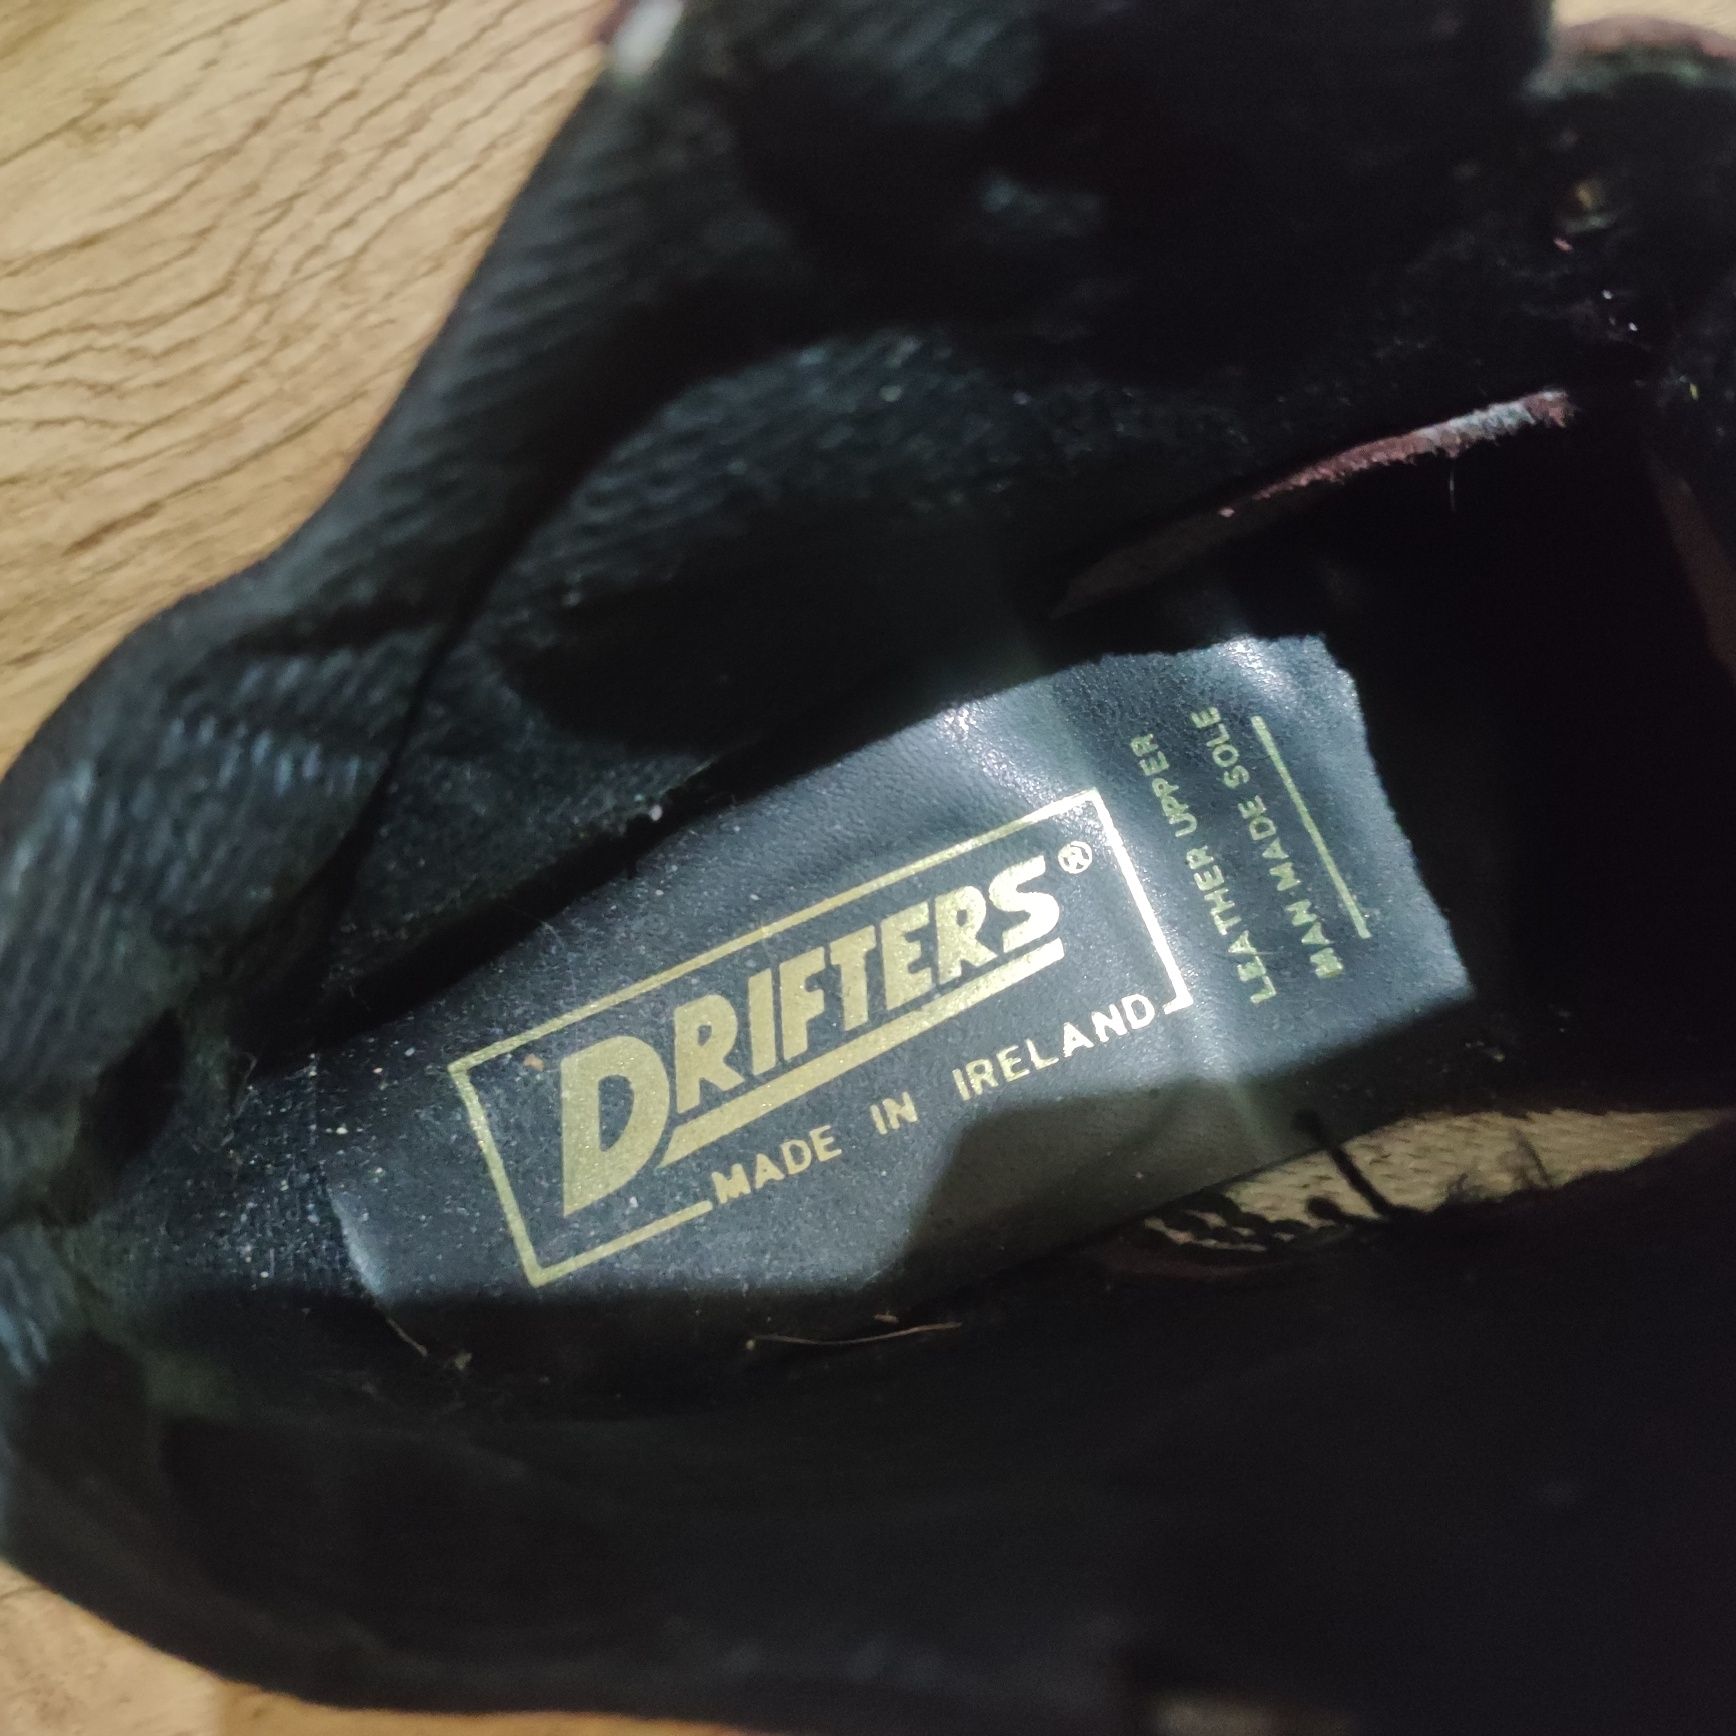 Ботинки Drifters орігінал Ірландія